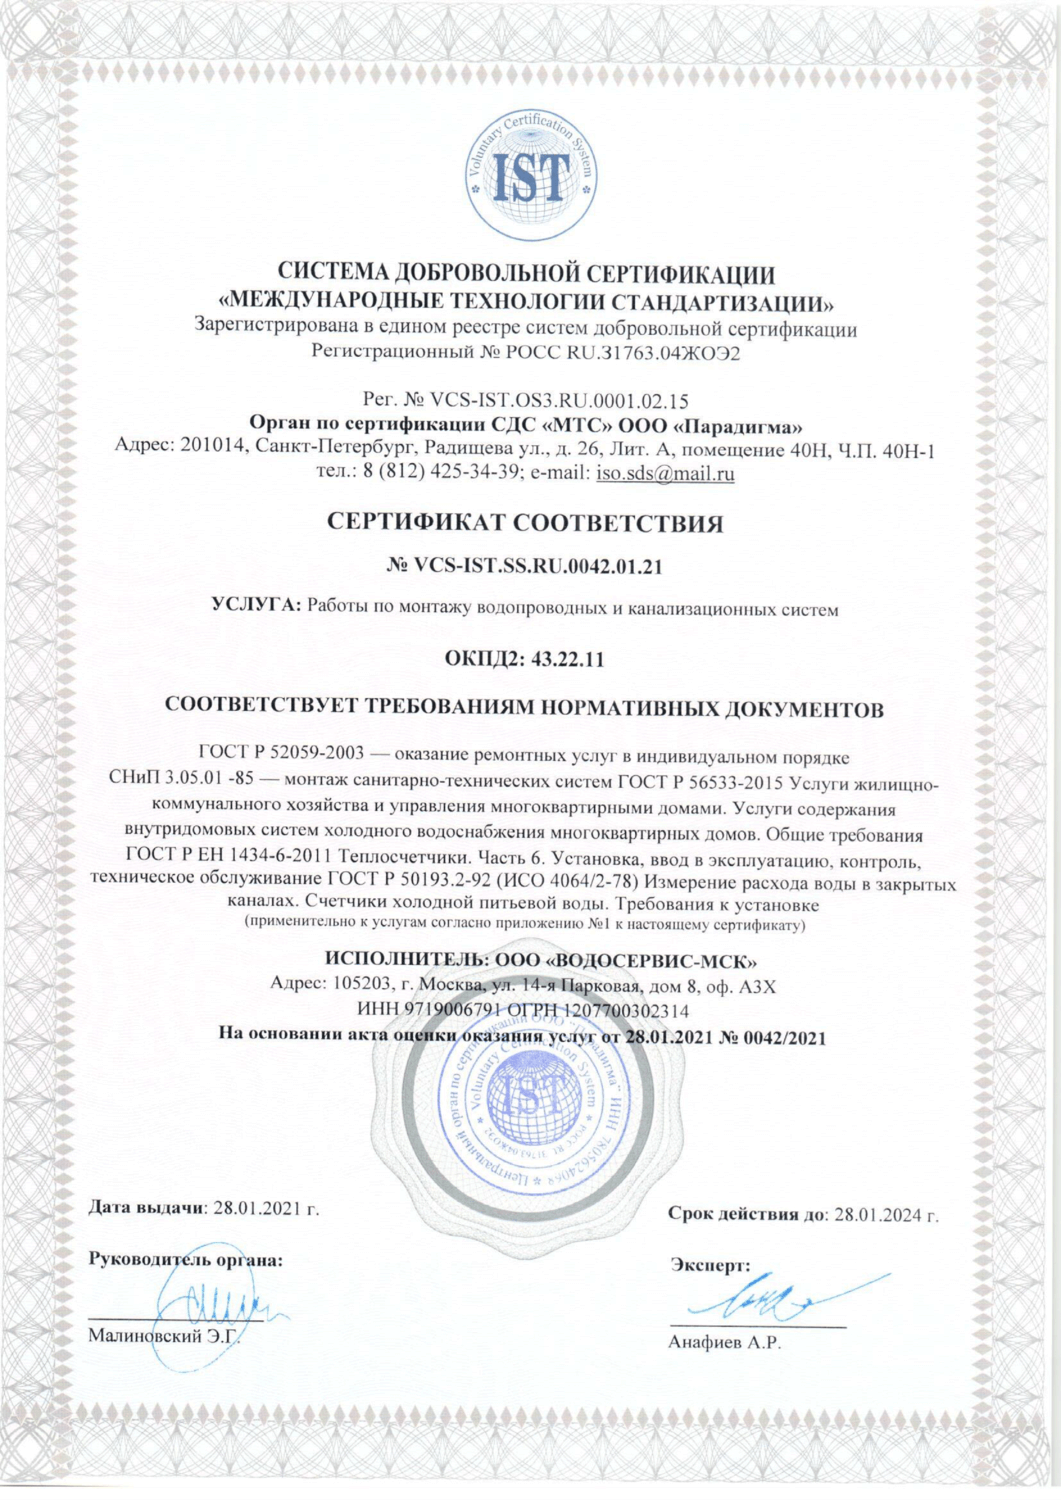 Сертификат ООО "ВОДОСЕРВИС-МСК"